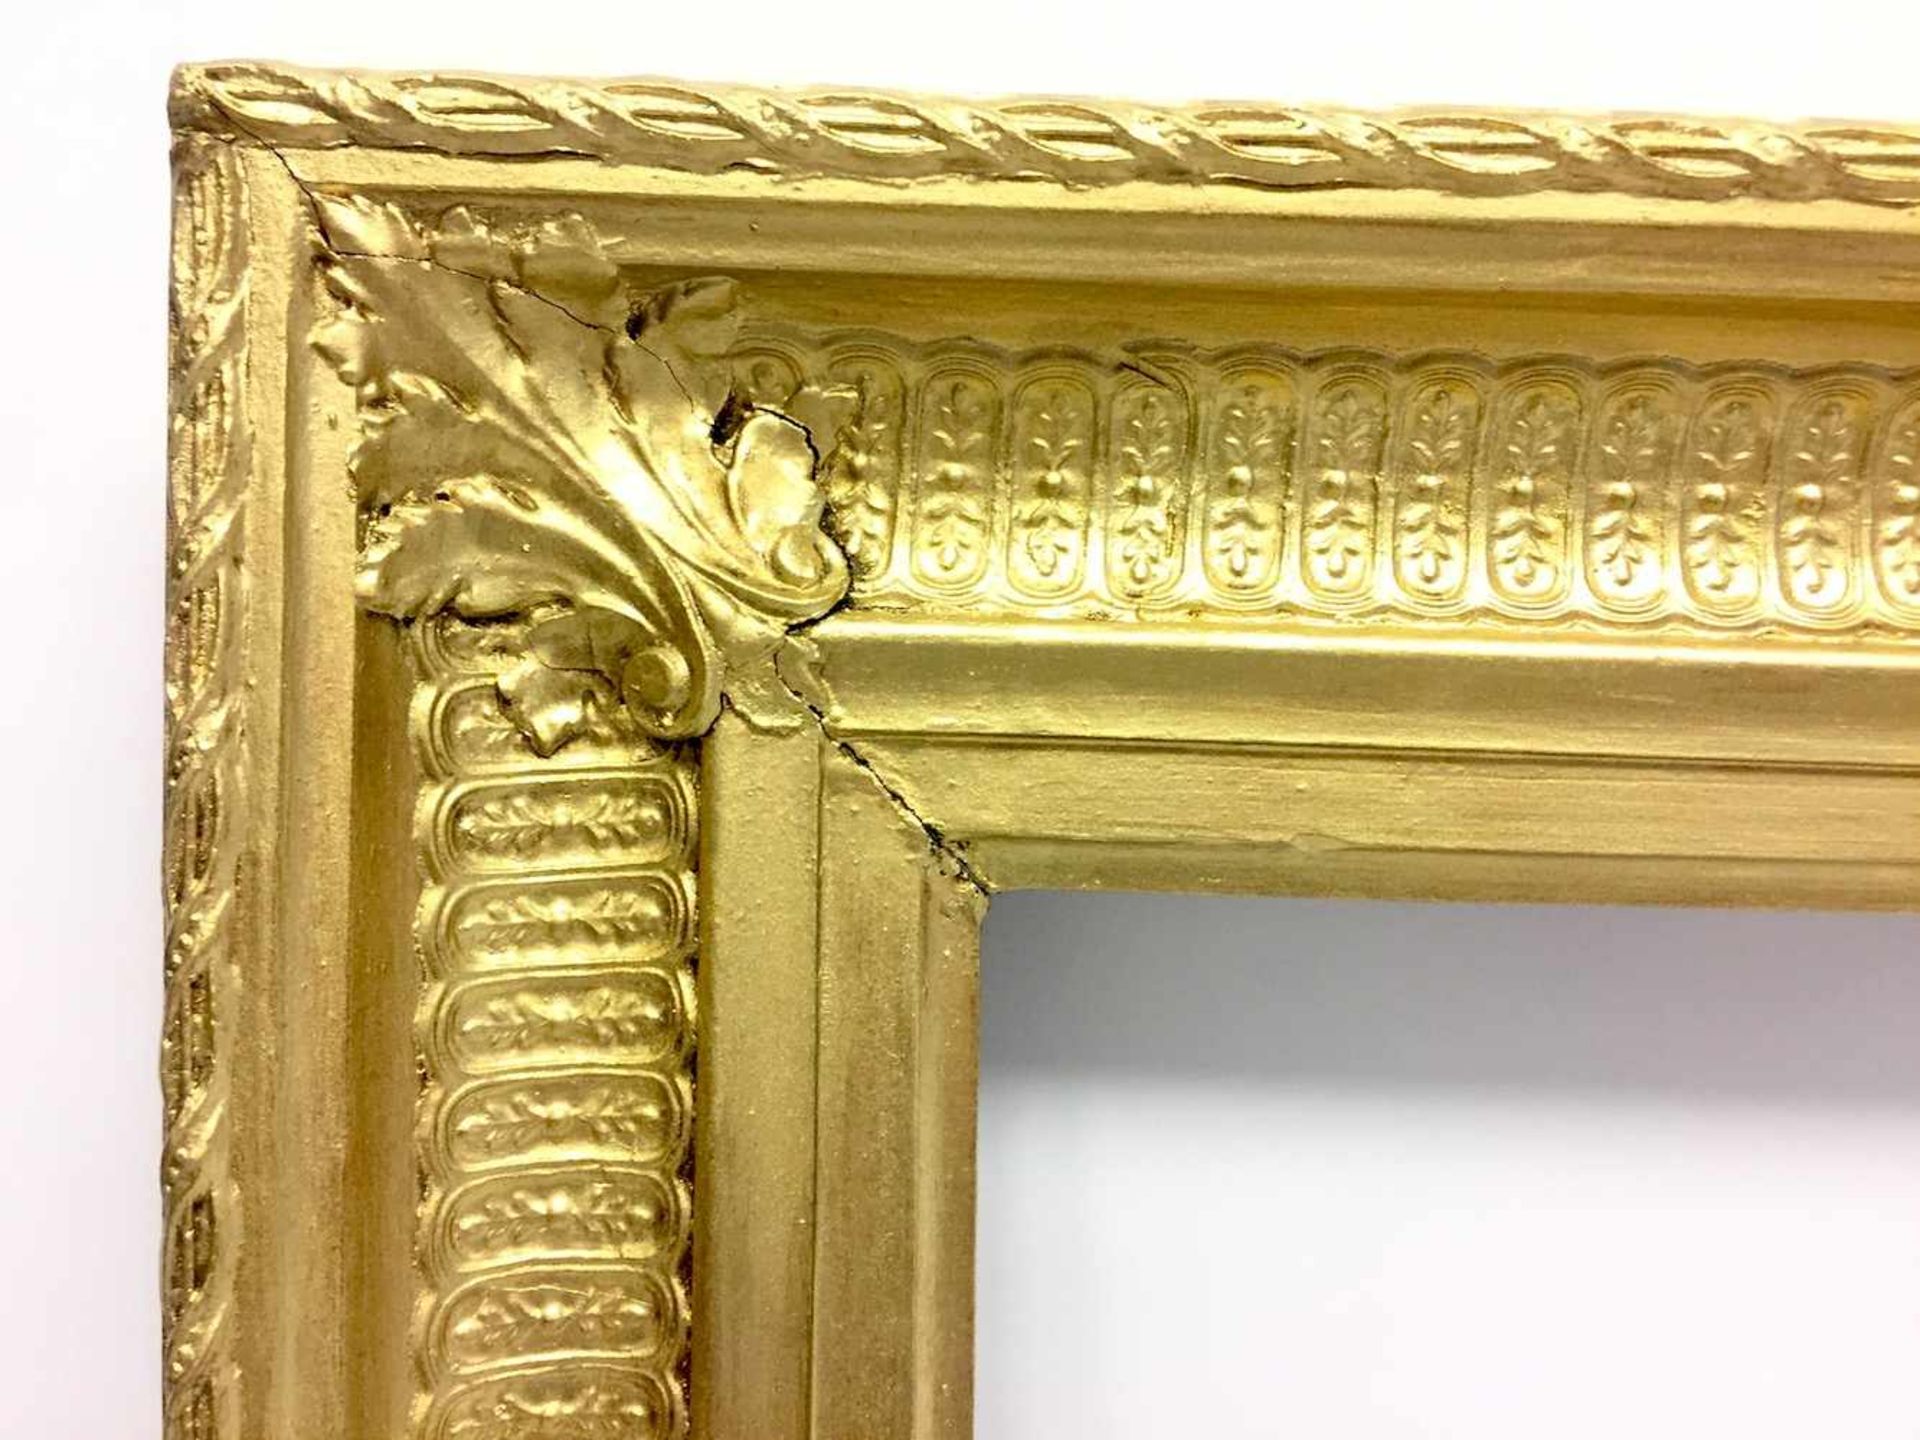 Klassizistischer Rahmen mit Pfeifenschnitt, vergoldet, Frankreich um 1800.Mehrfach gestufter und